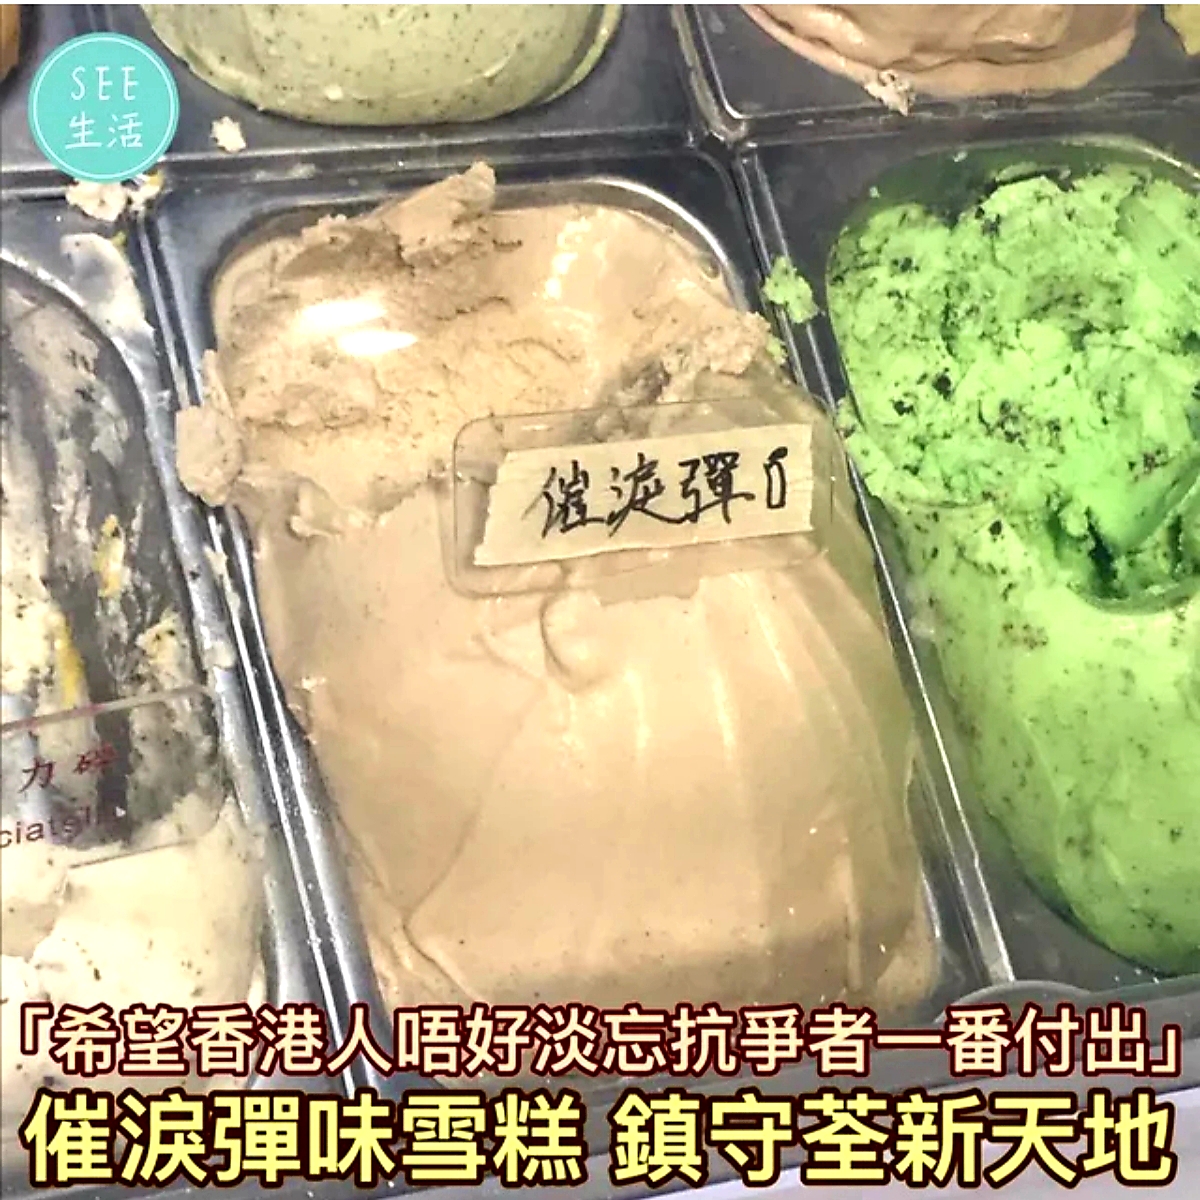 بستنی با طعم گاز اشک‌آور در چین تولید شد